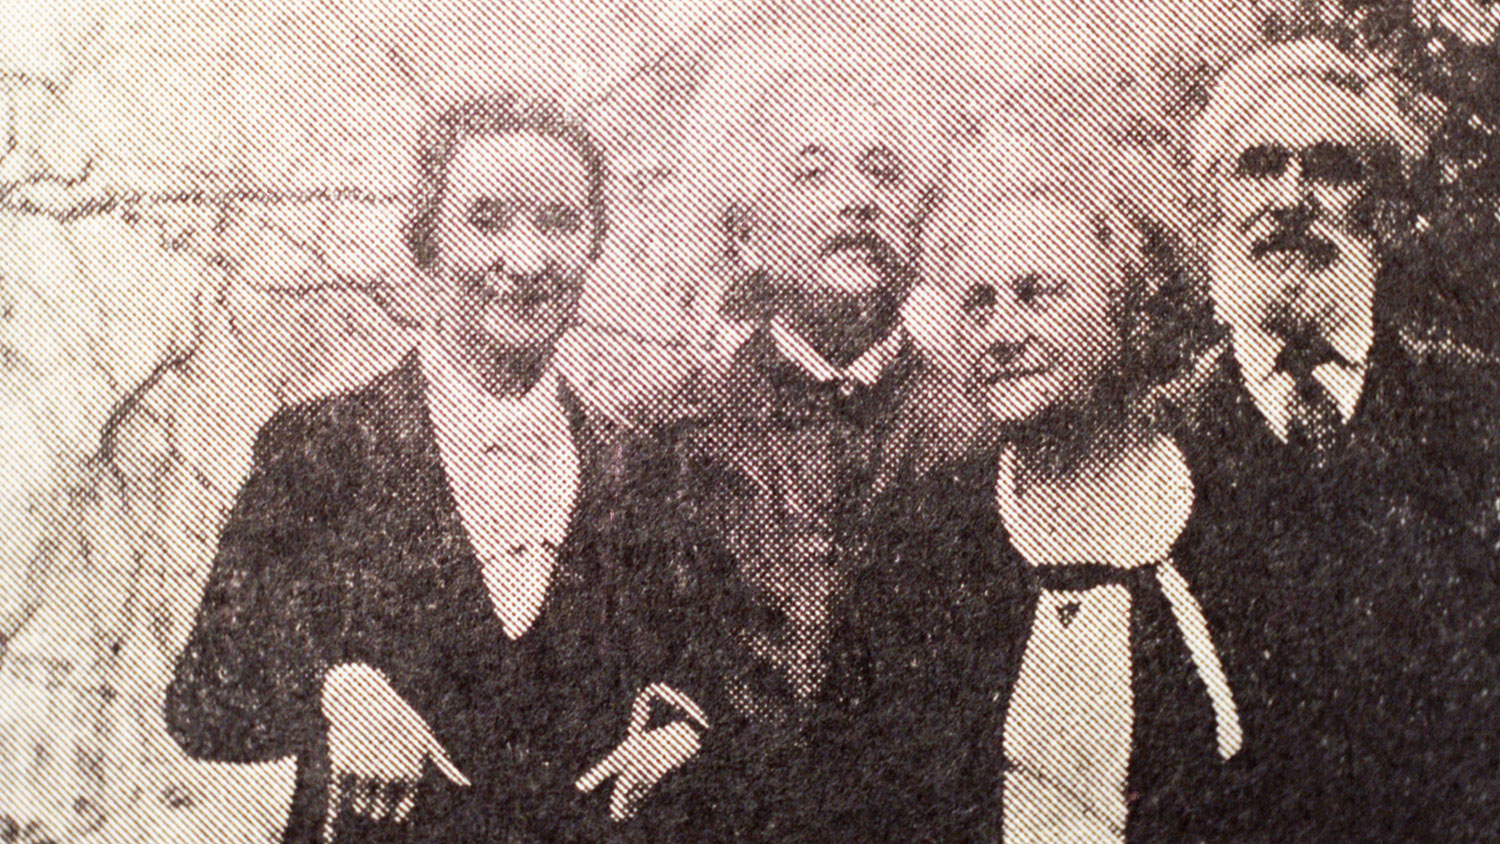 Альберт Эйнштейн и Сергей Коненков с женами в саду дома Эйнштейнов в Принстоне, примерно 1935-1936 гг.